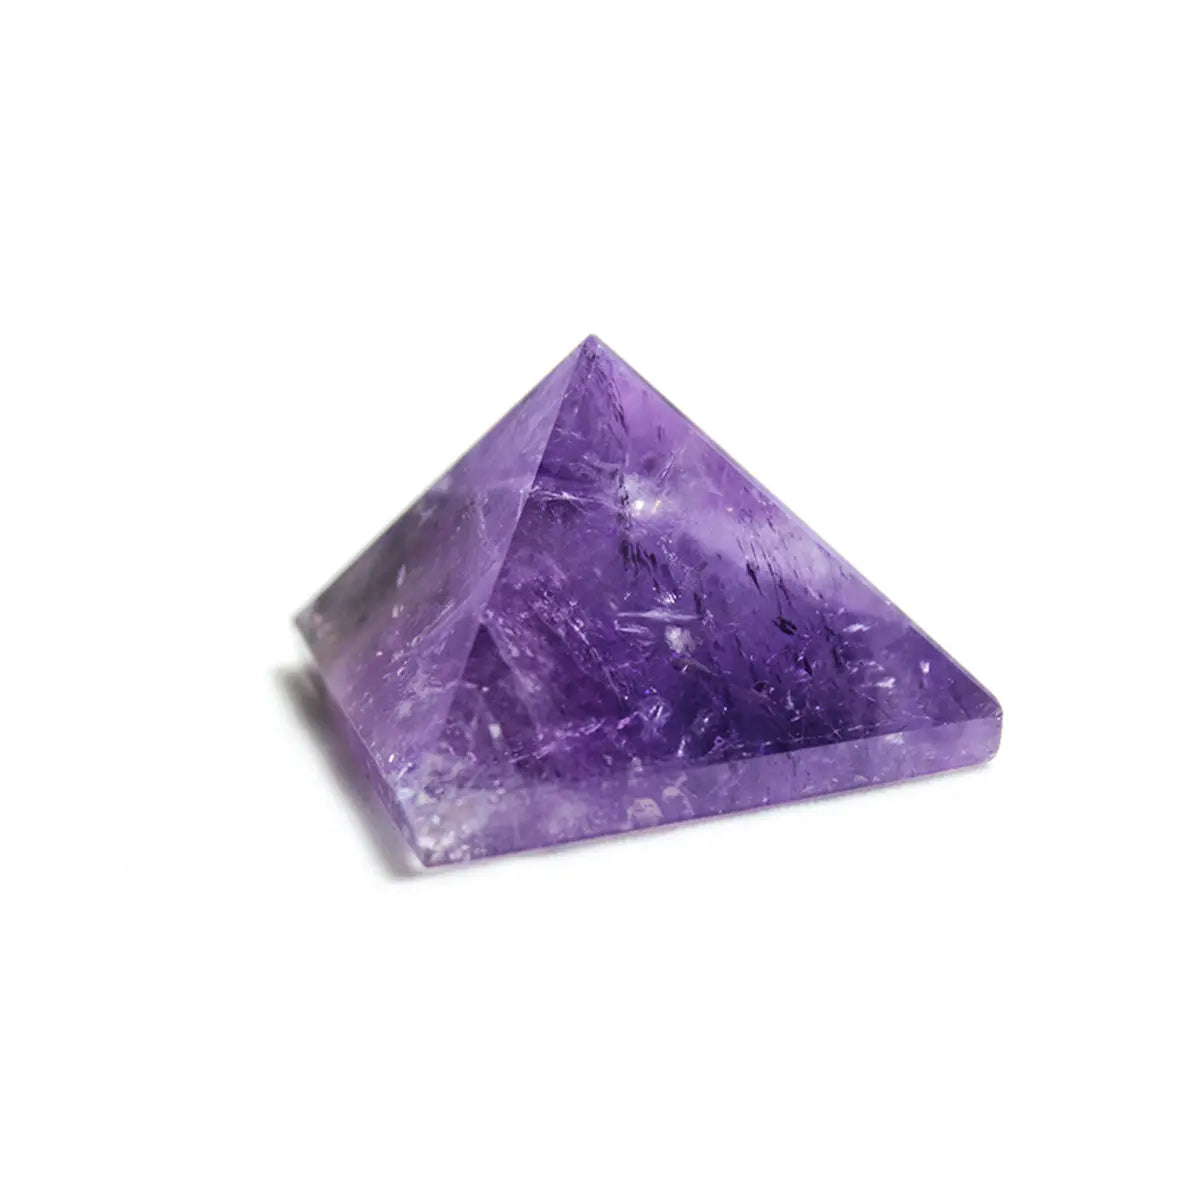 Natural Crystal Amethyst Pyramid Healing Crystal Home